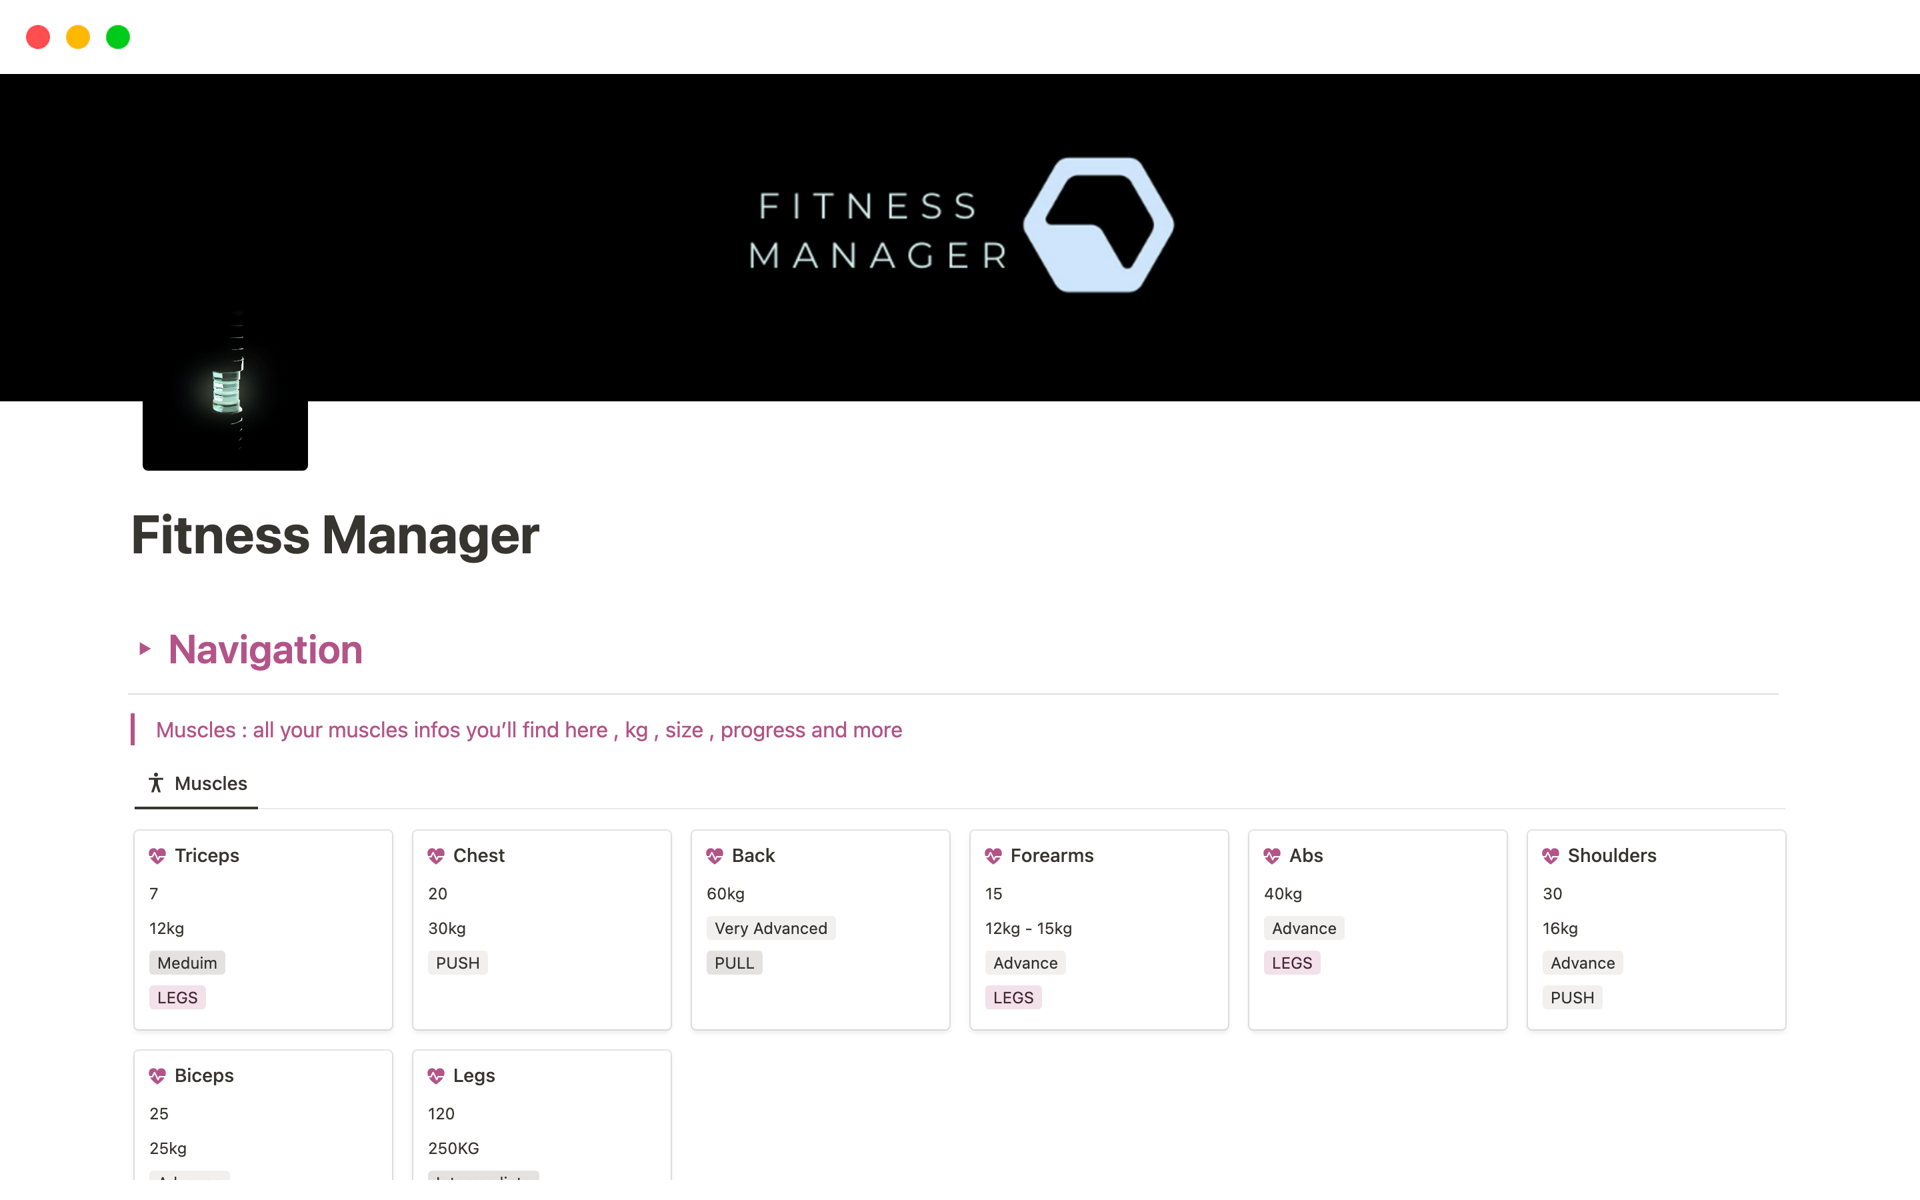 Vista previa de una plantilla para Fitness Manager